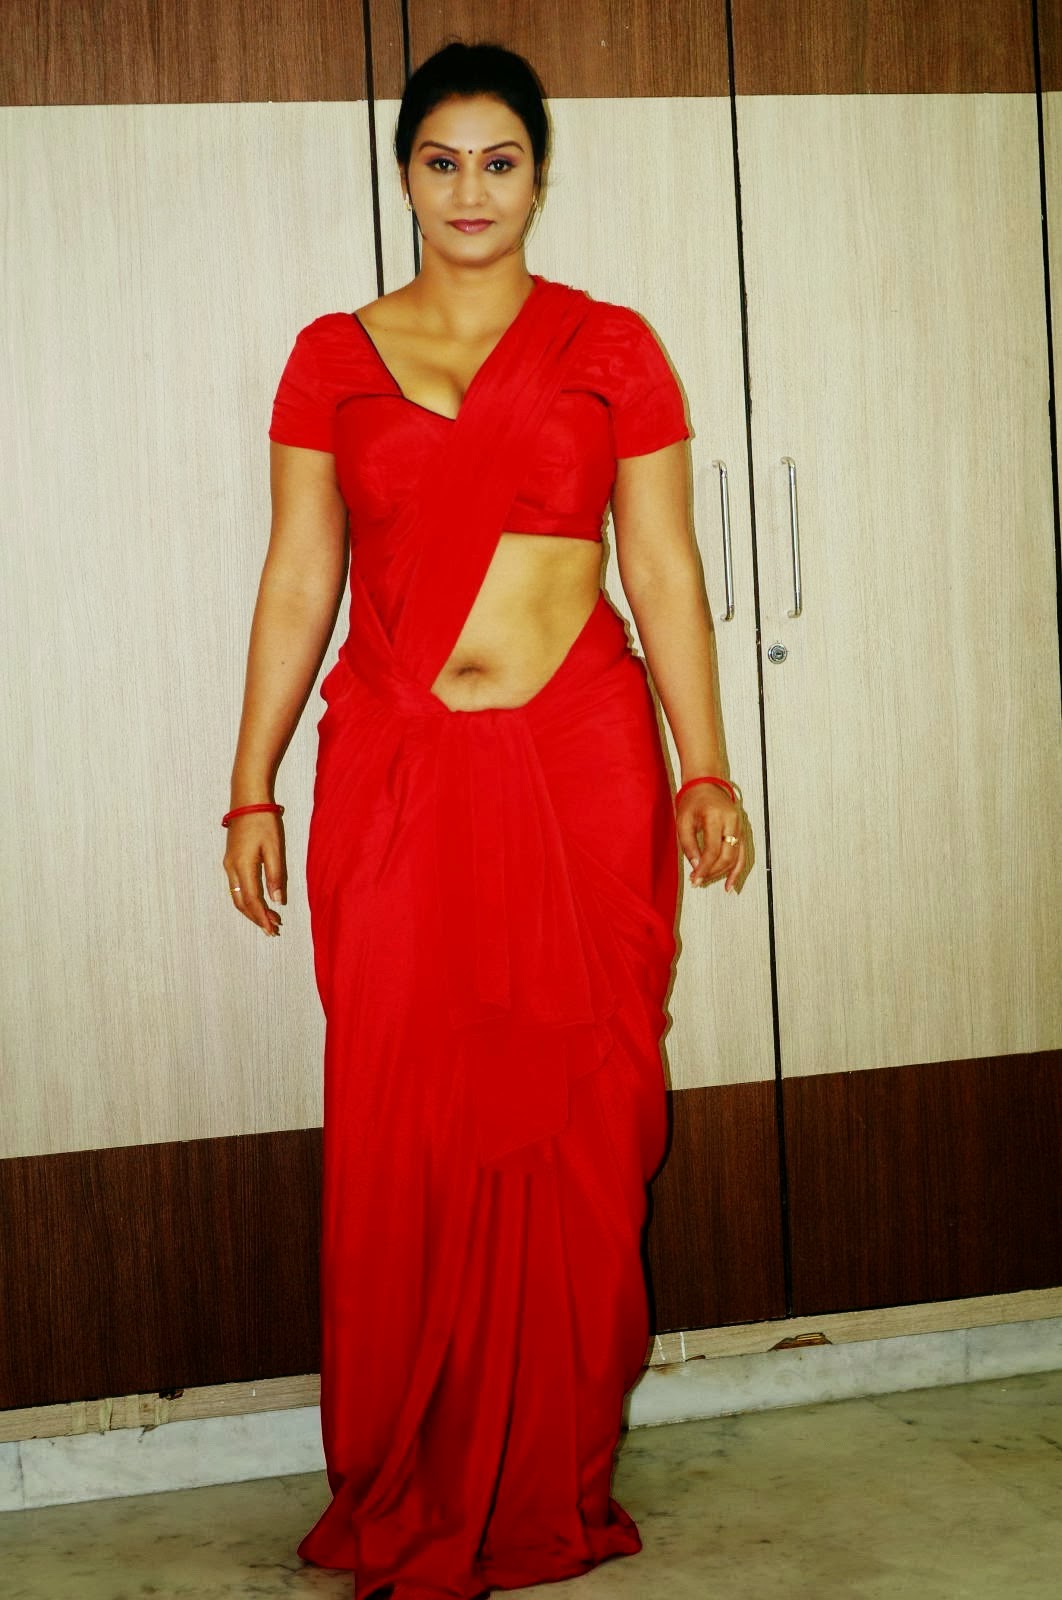 SAREE BELOW NAVEL PHOTOS: Telugu Aunty Apoorva Hot Deep Navel Show ...